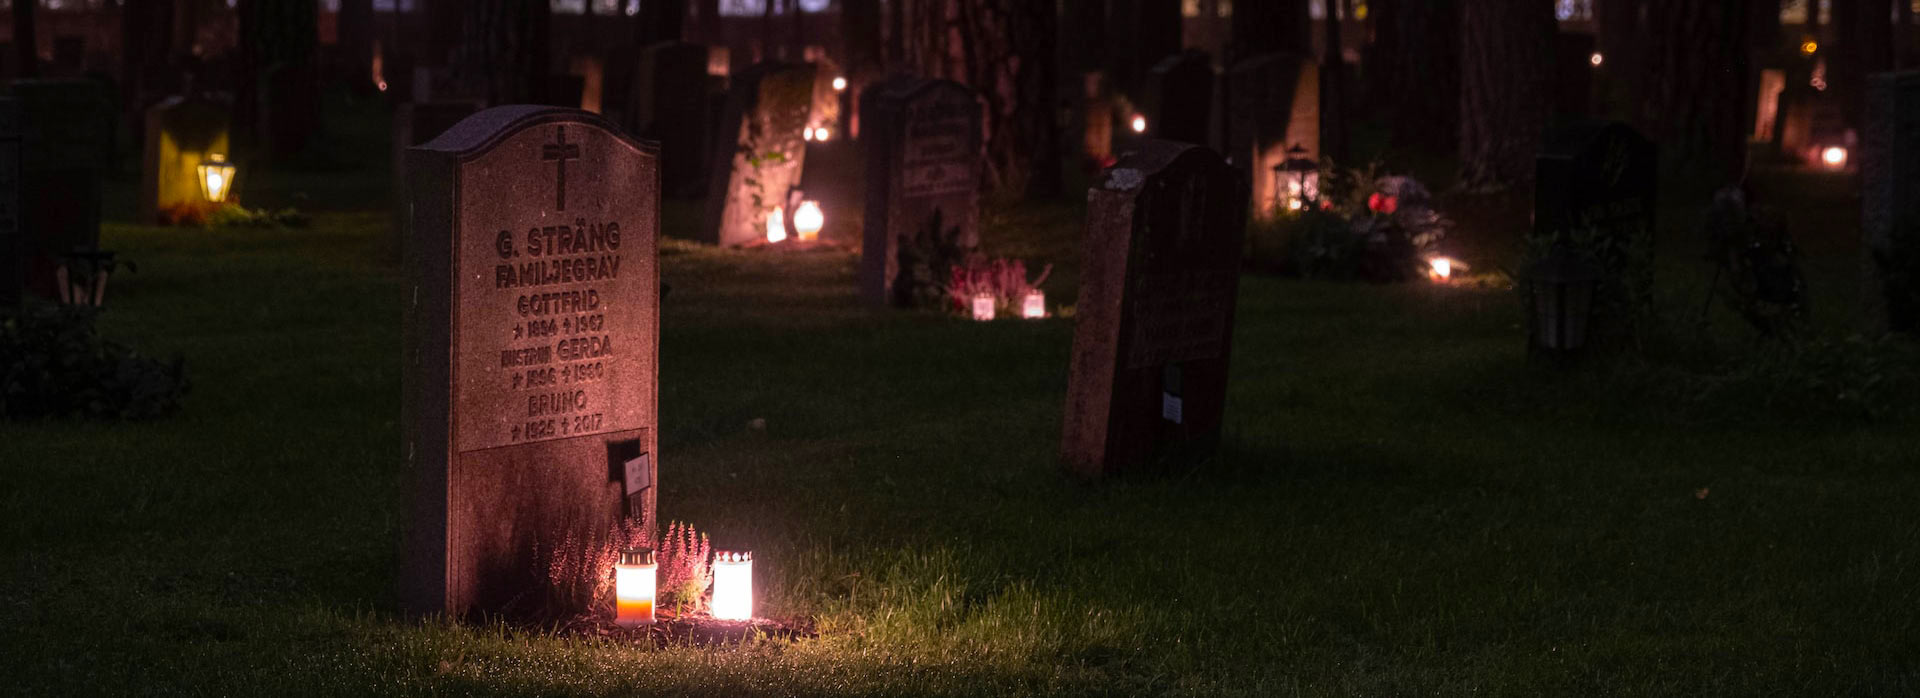 Um cemitério à noite iluminado com velas